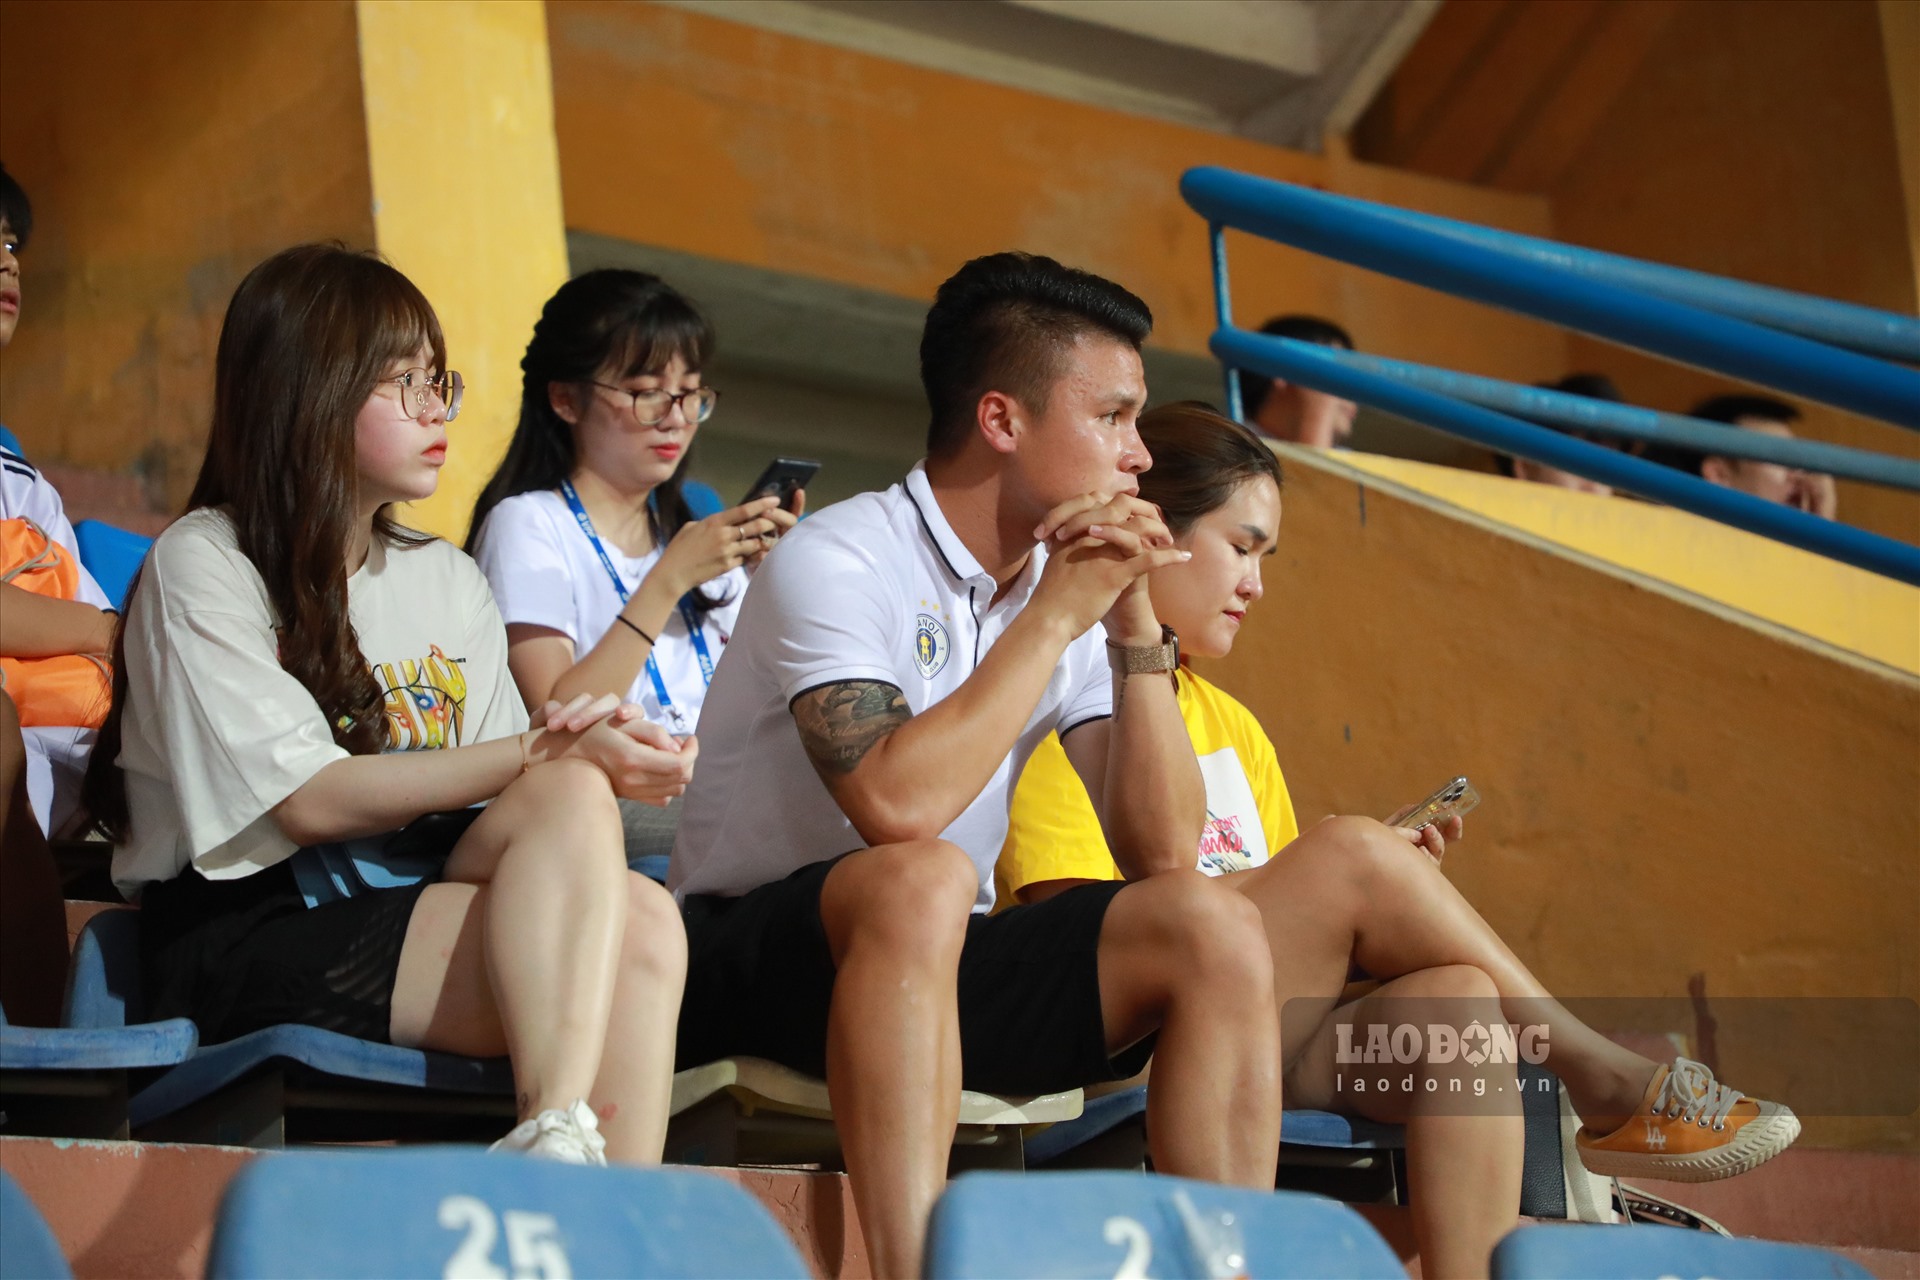 Ở trận này, tiền Quang Hải không được đăng ký thi đấu do dính chấn thương. Cầu thủ 23 tuổi cùng bạn gái Huỳnh Anh xuất hiện trên sân Hàng Đẫy để cổ vũ cho các đồng đội.